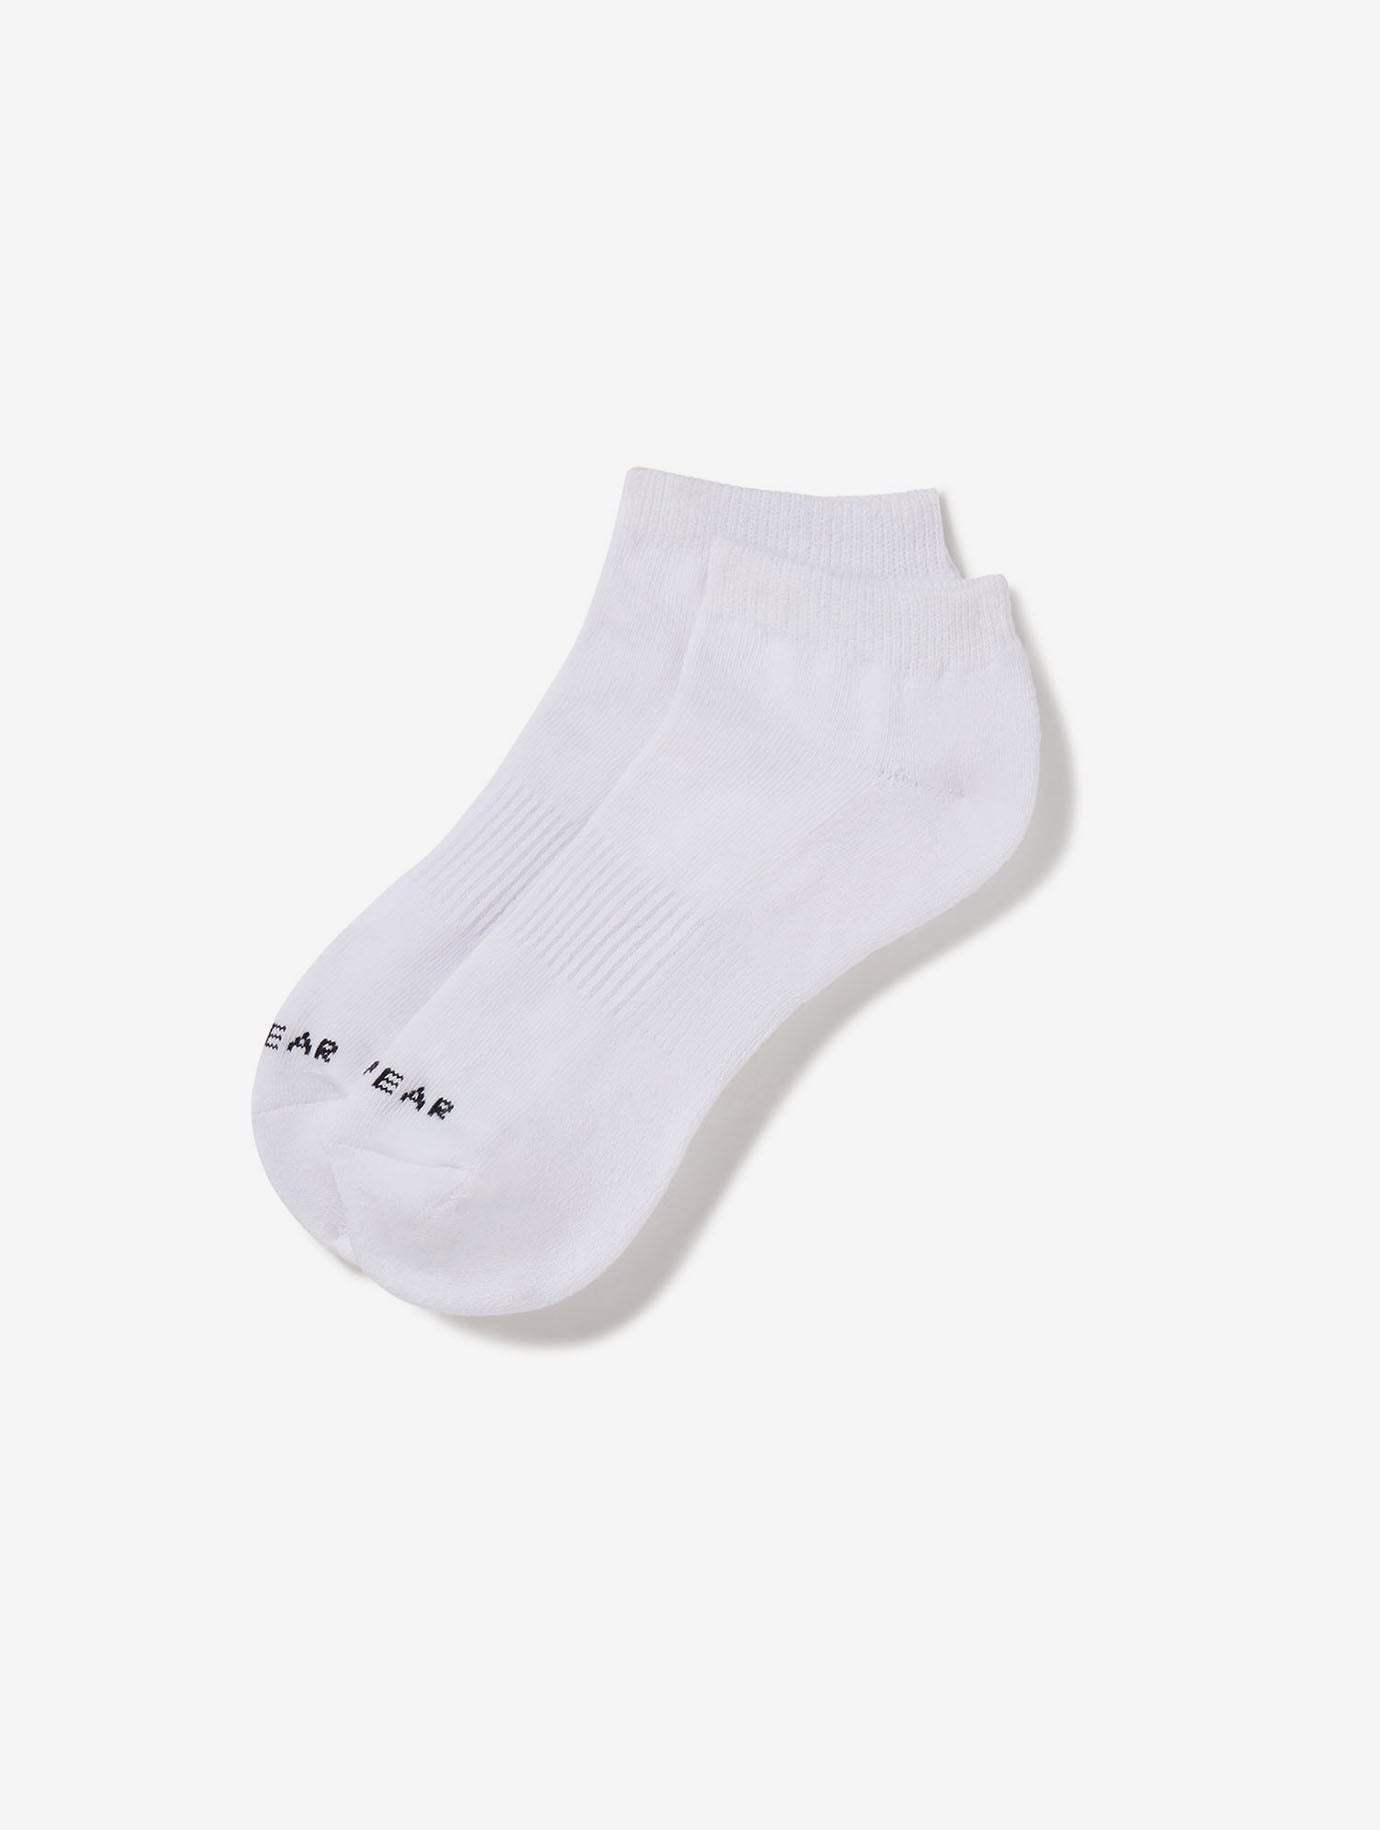 Allwear Organic Ankle Socks